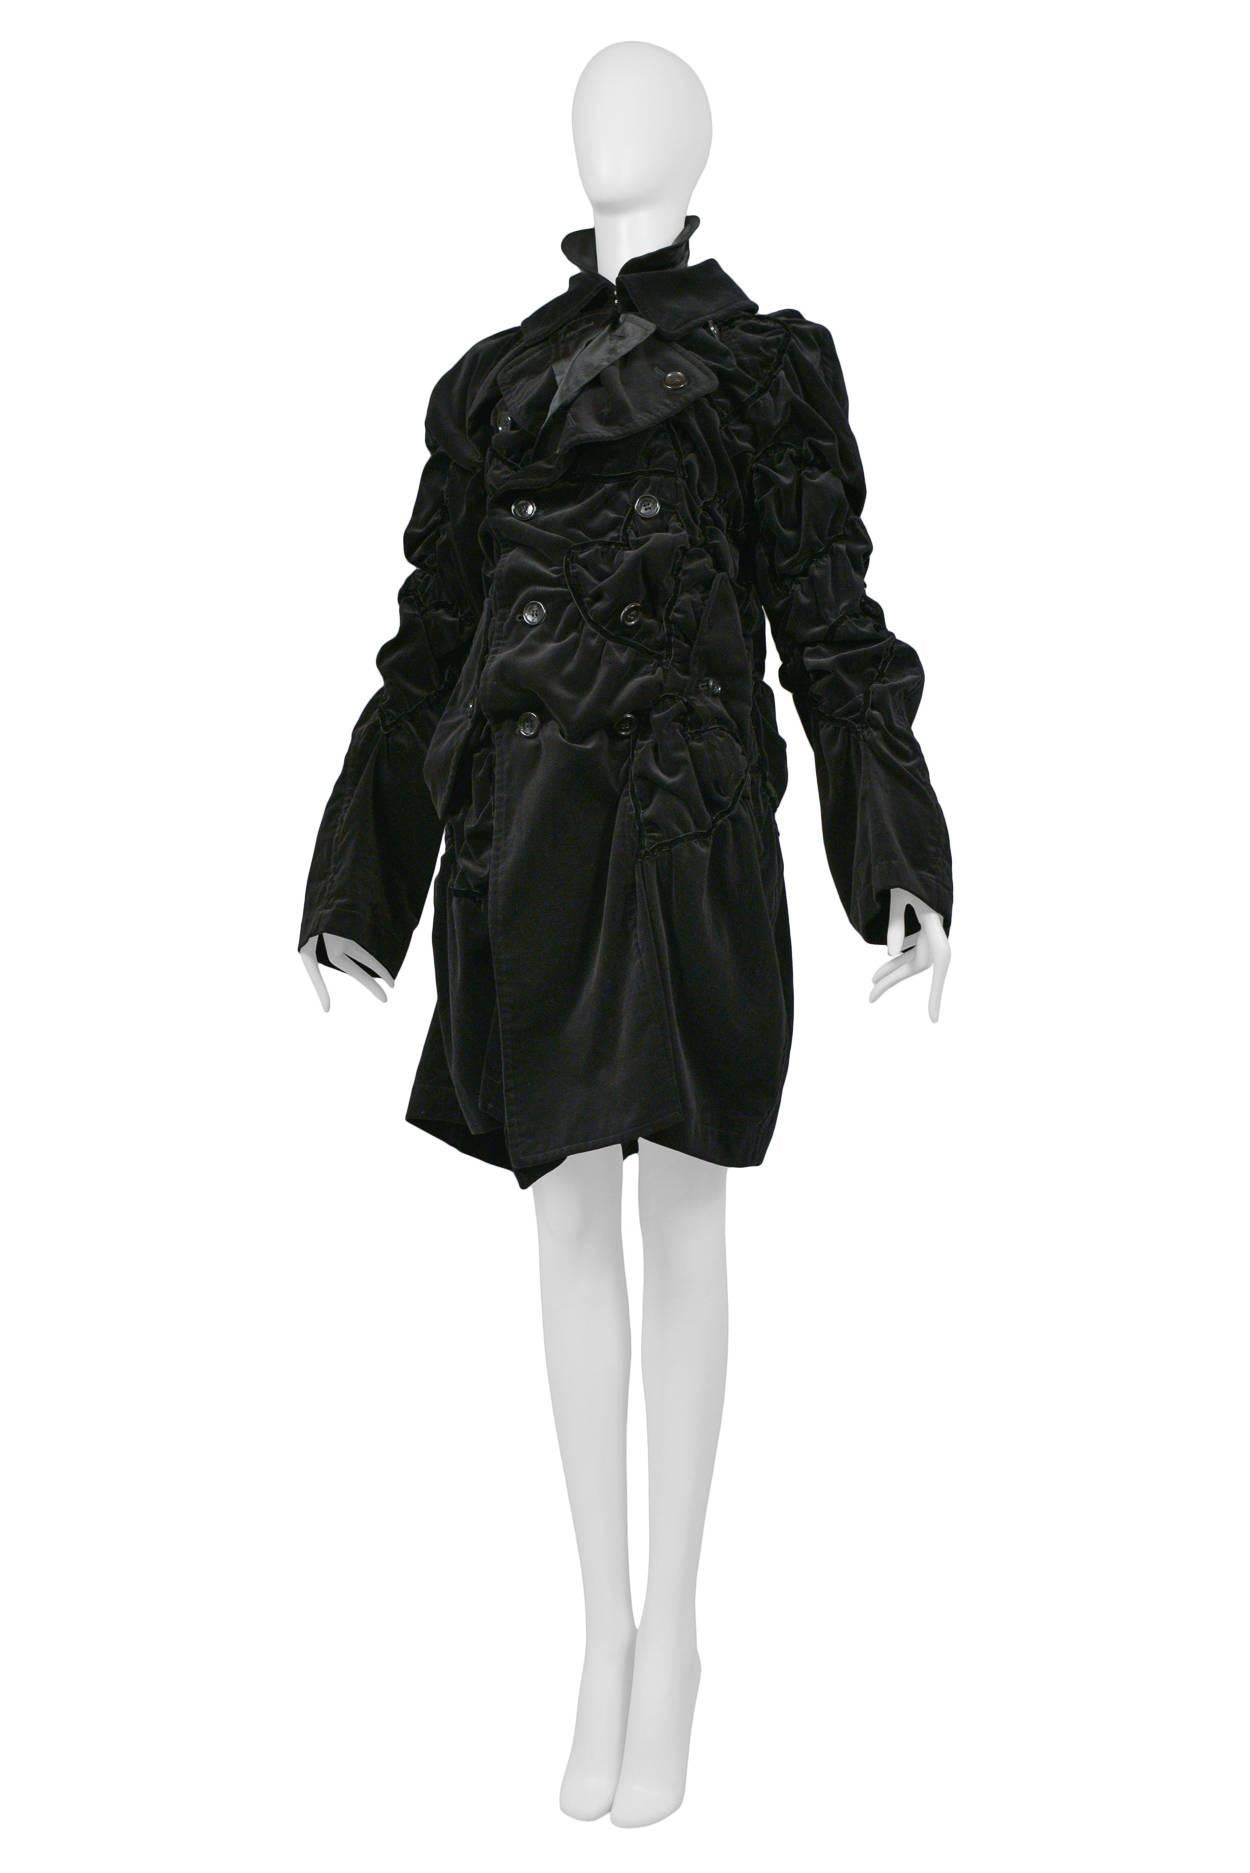 Comme des Garcons Bad Taste Black Velvet Coat 2008 In Excellent Condition For Sale In Los Angeles, CA